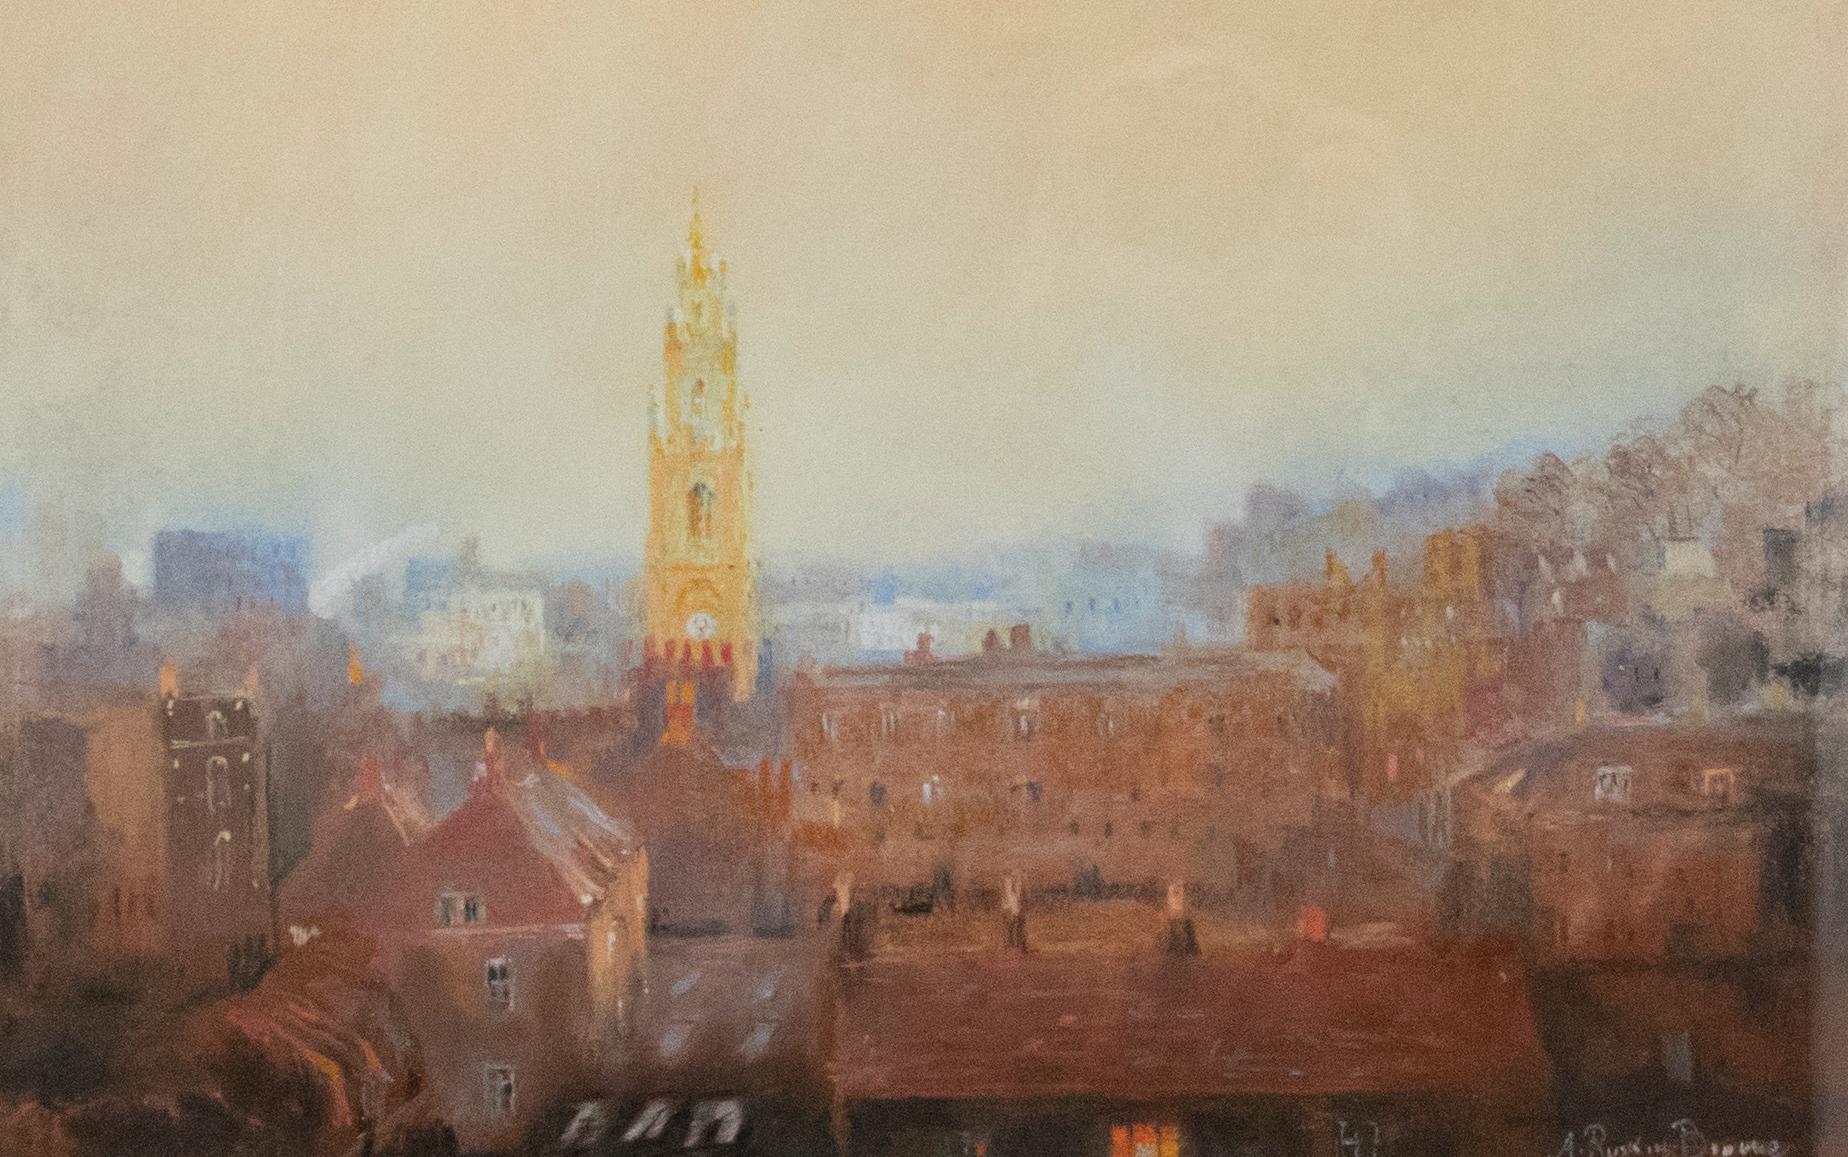  A. Ruskin-Browne - Gerahmtes pastellfarbenes Morgenlicht des 20. Jahrhunderts, Bristol – Art von Unknown